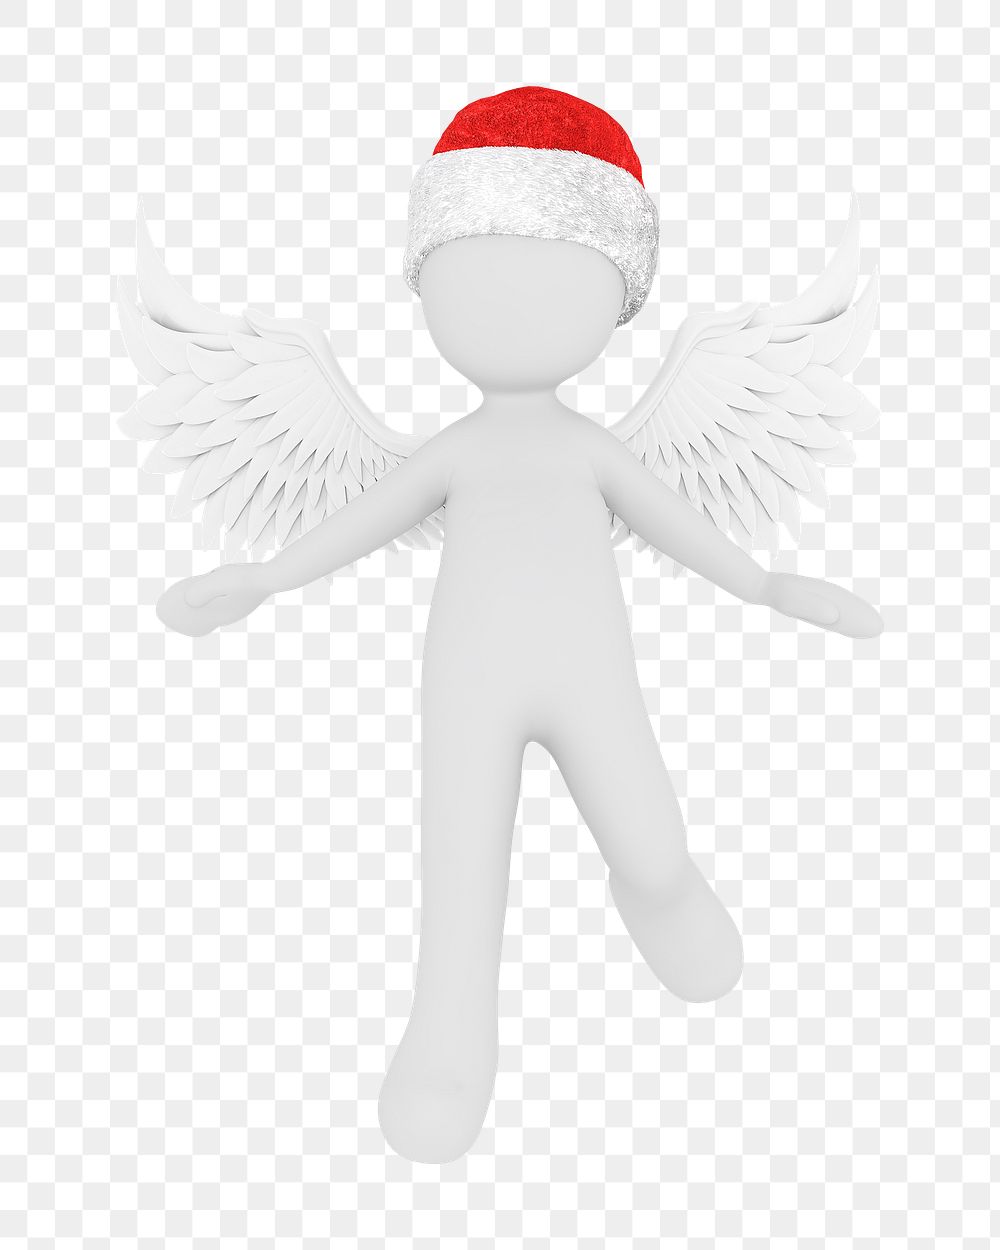 3D Santa angel png sticker, transparent background